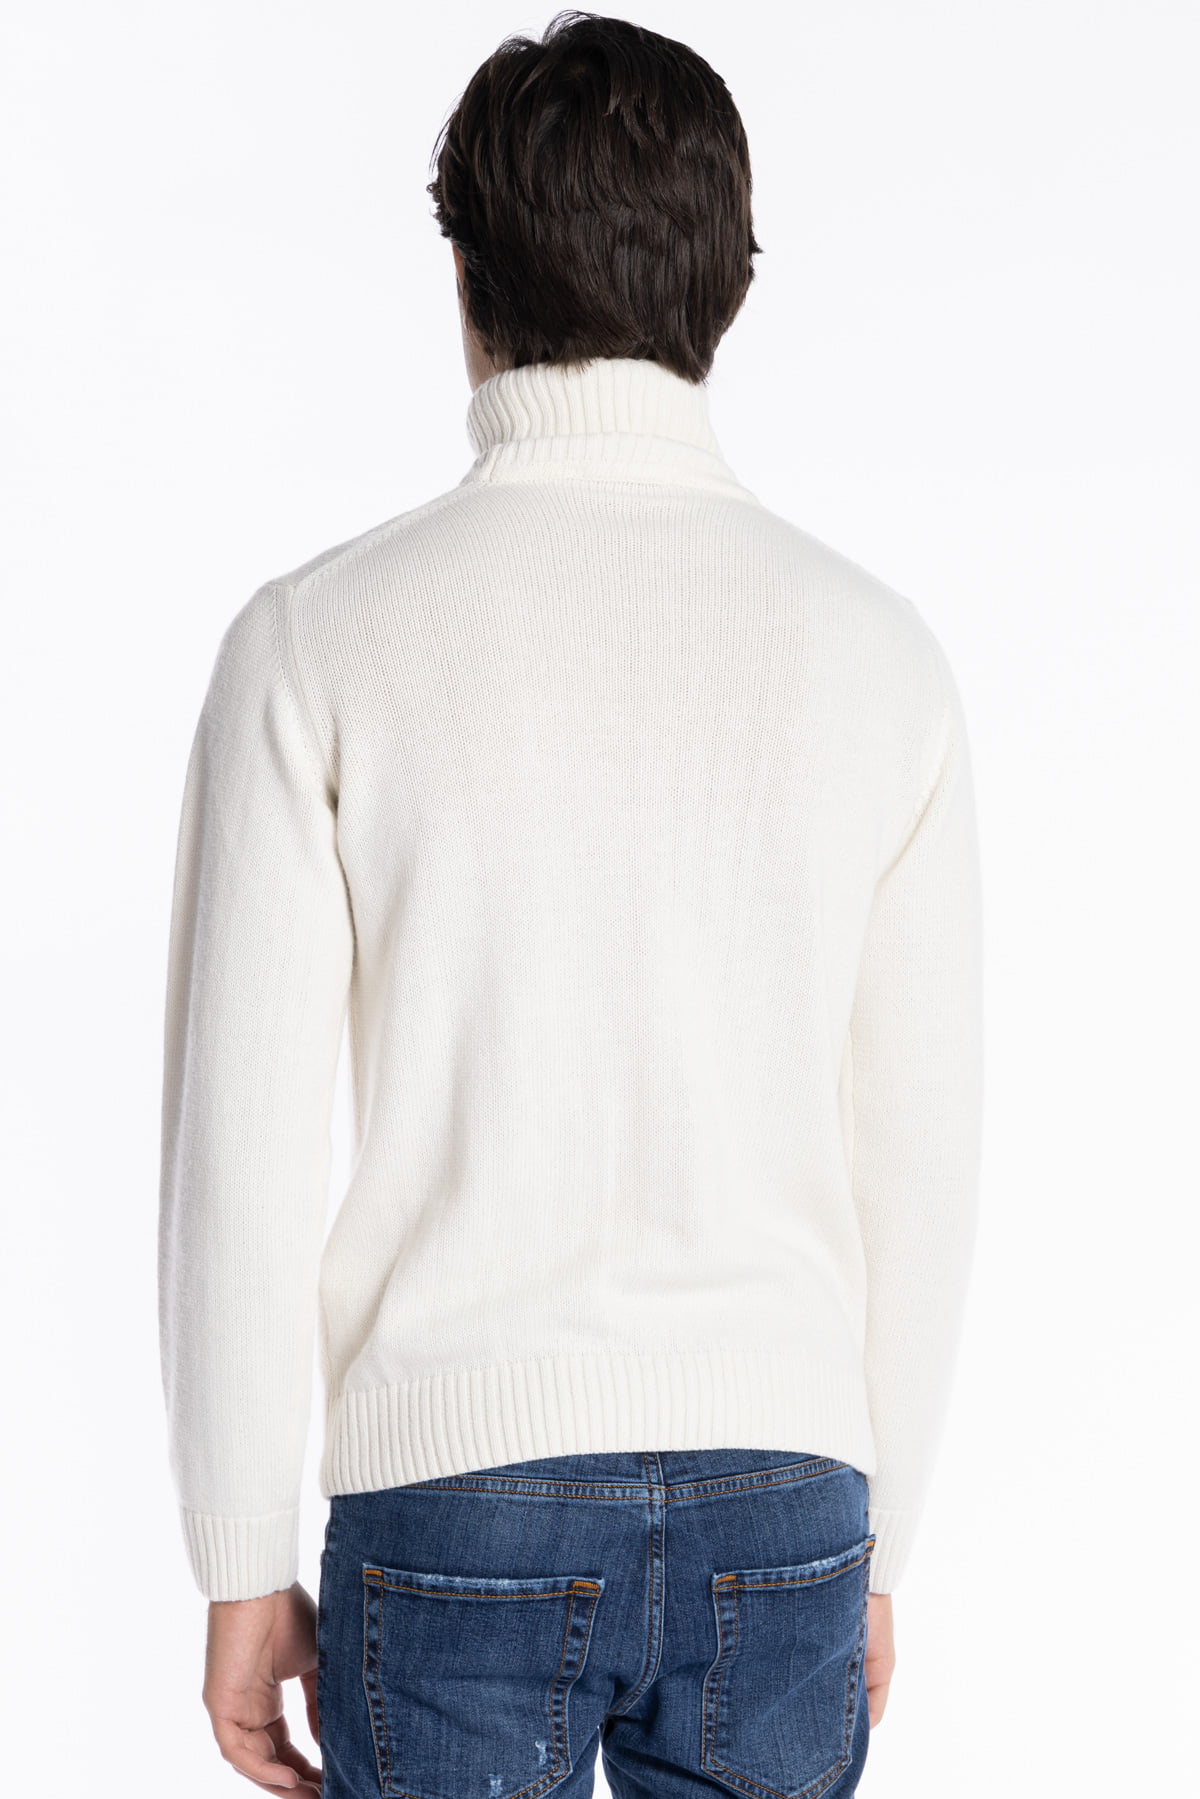 Maglione da uomo collo alto bianco in lana e Cashmere con trama treccia interna maniche lunghe